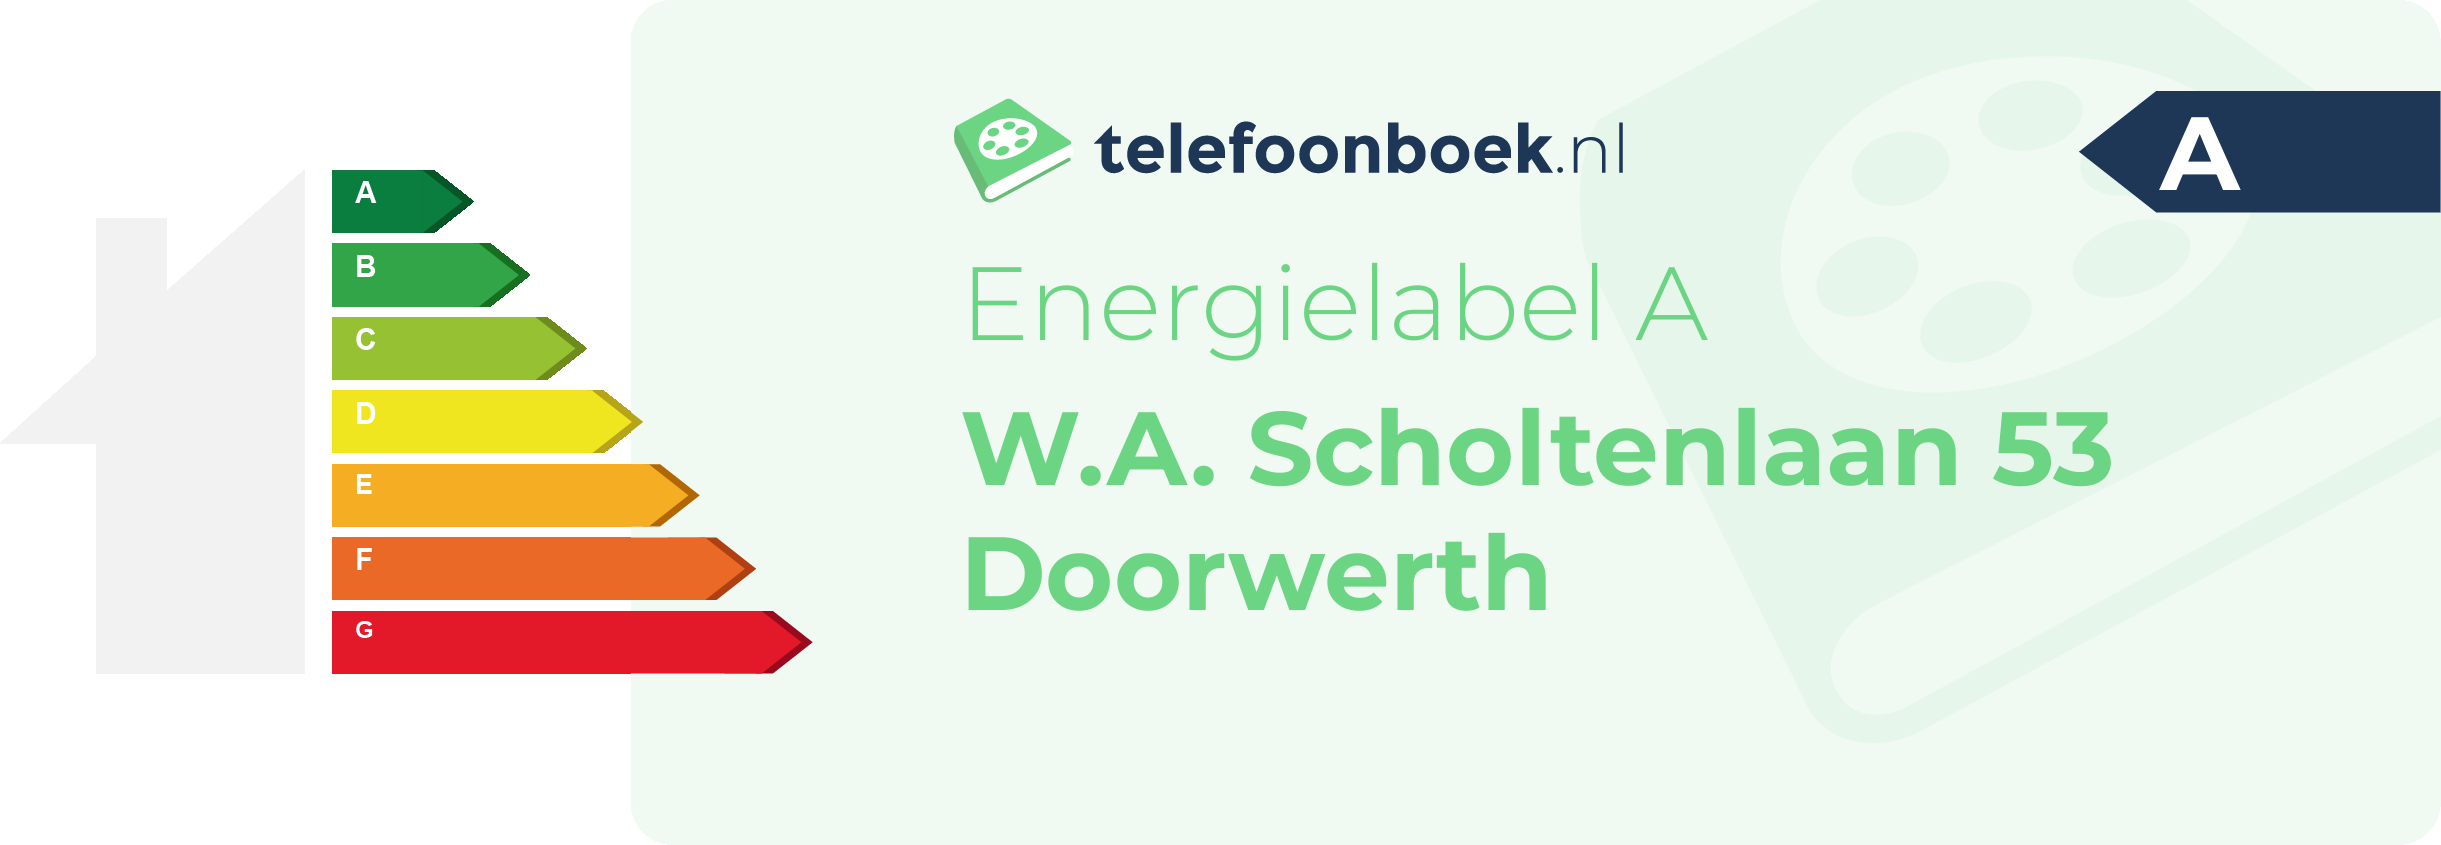 Energielabel W.A. Scholtenlaan 53 Doorwerth